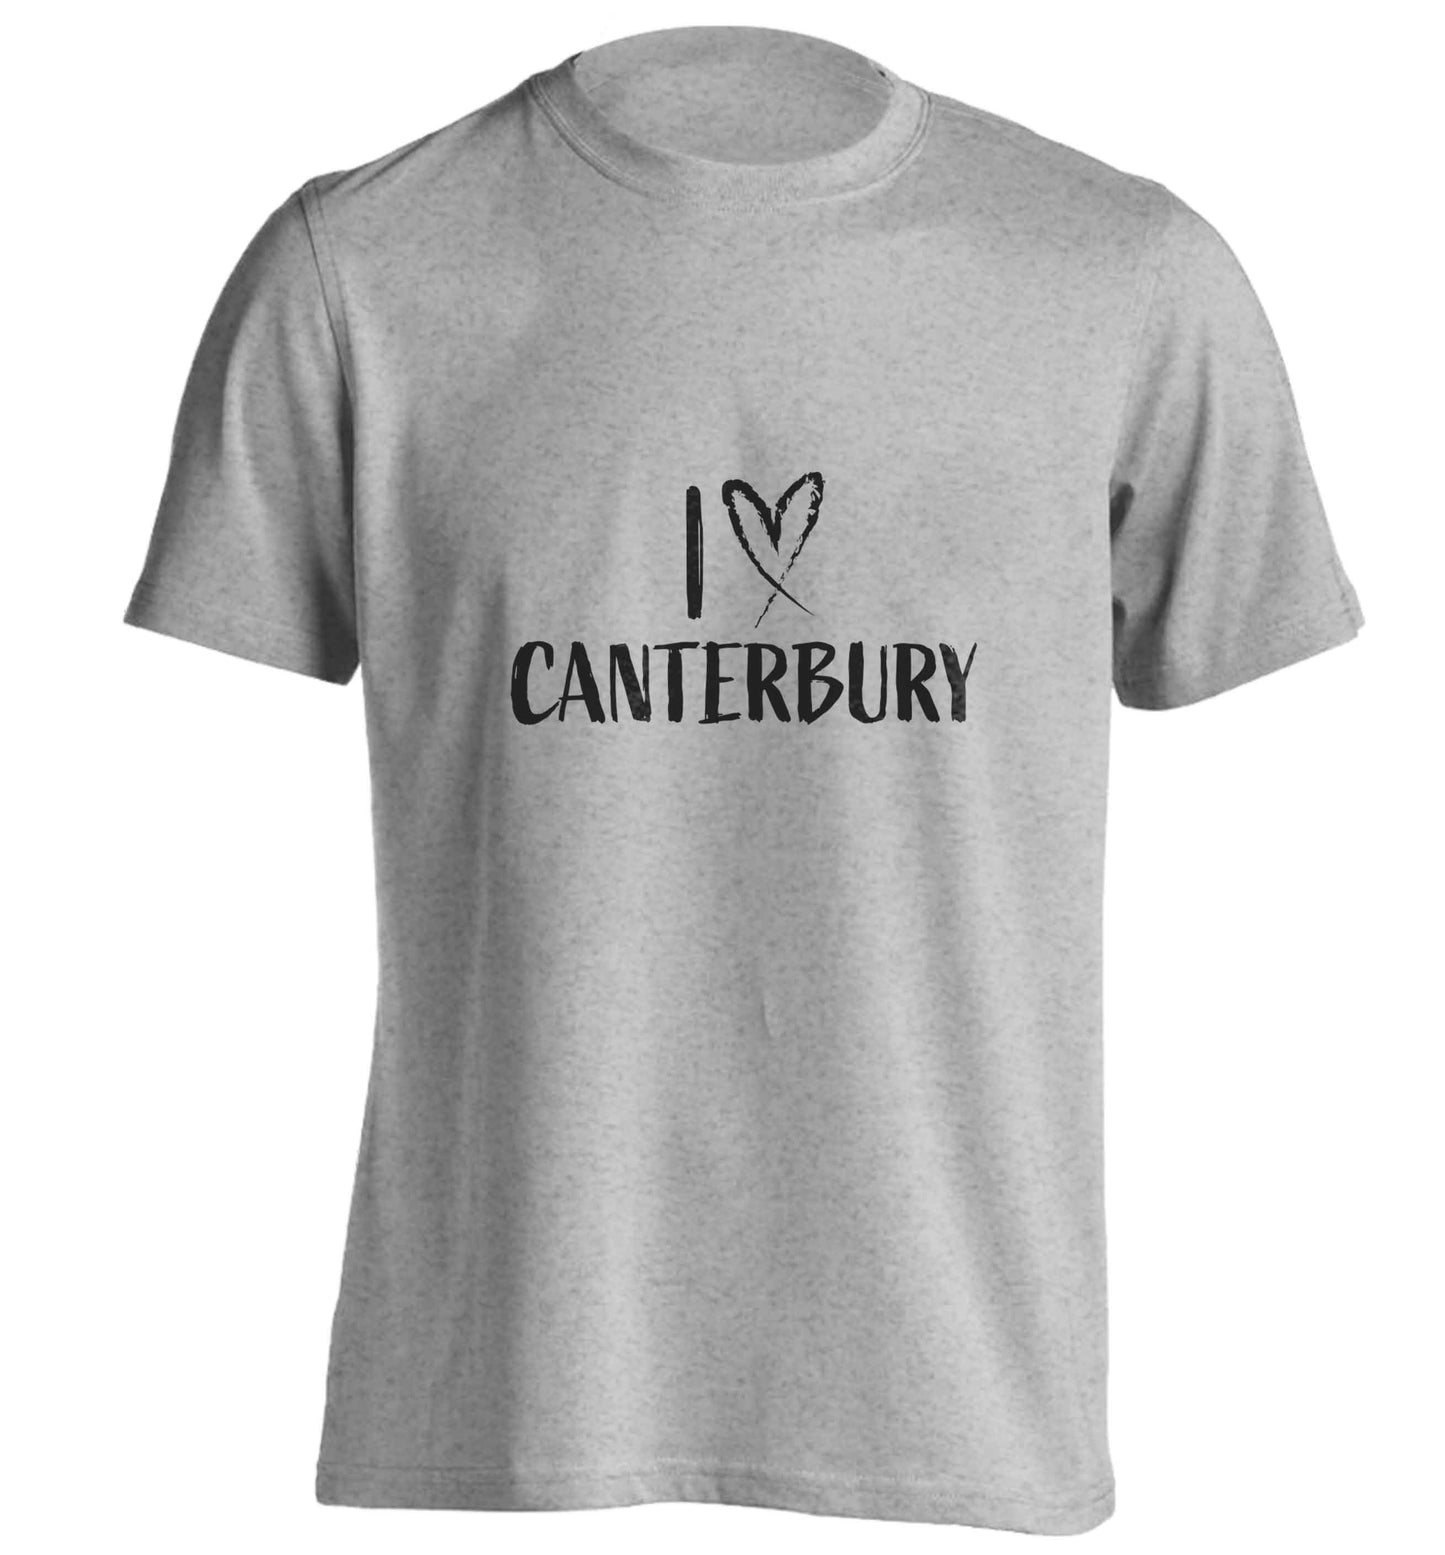 I love Canterbury adults unisex grey Tshirt 2XL